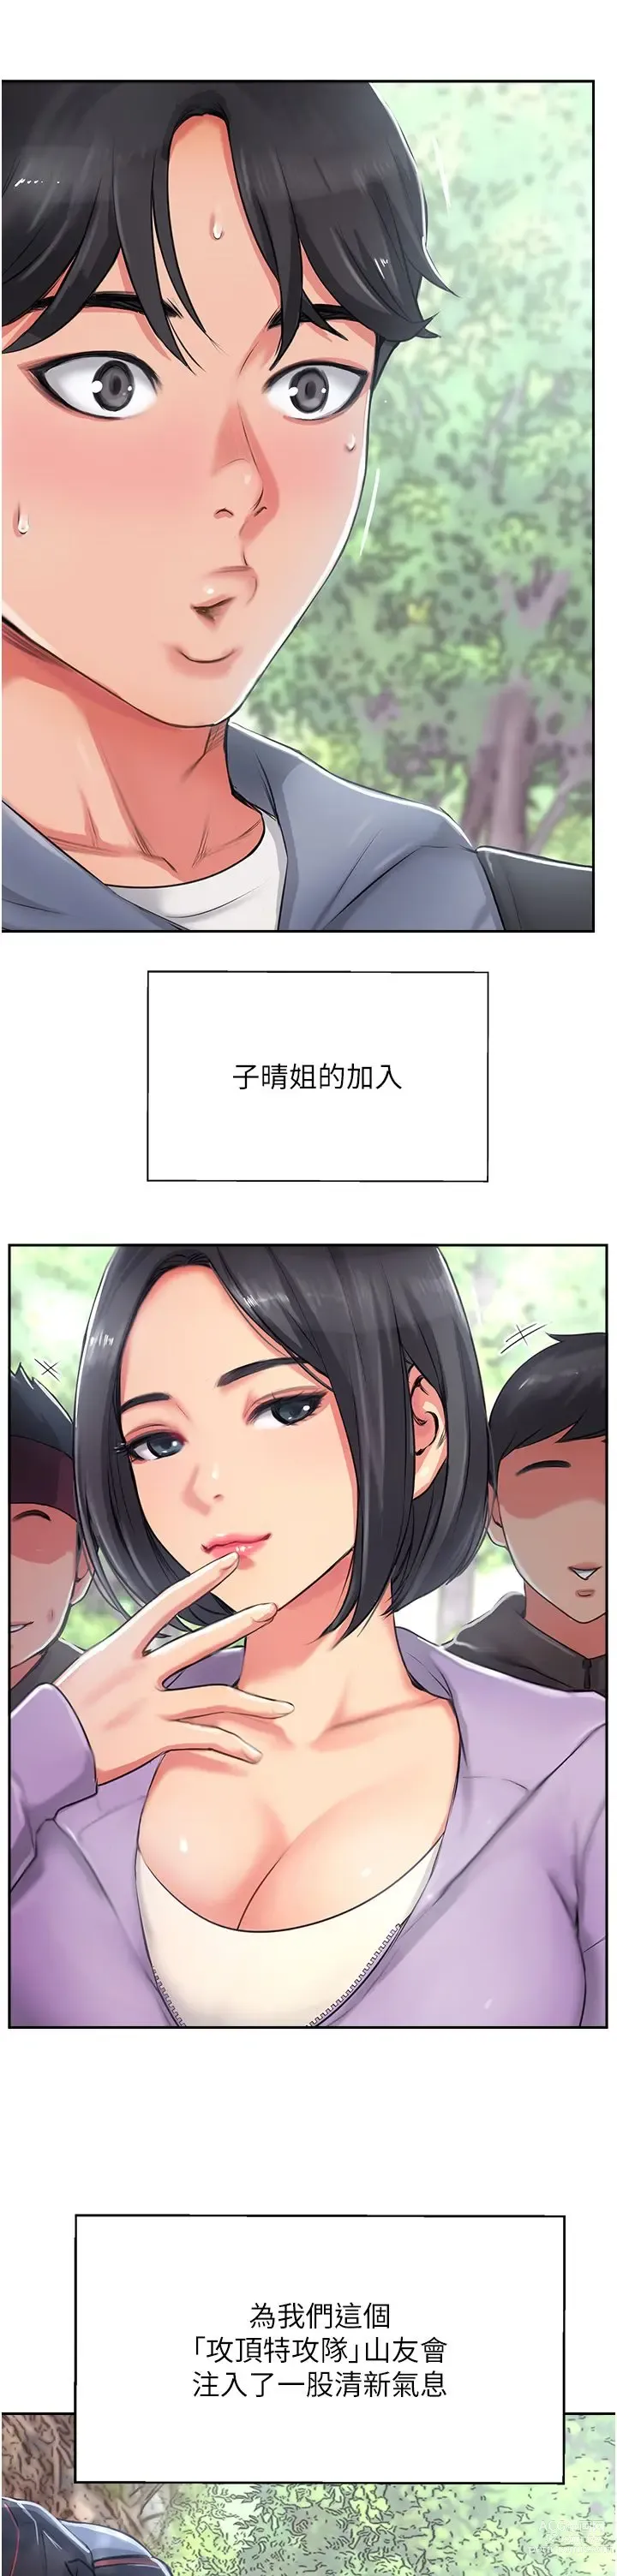 Page 9 of manga 攻顶传教士 1-31 中文无水印